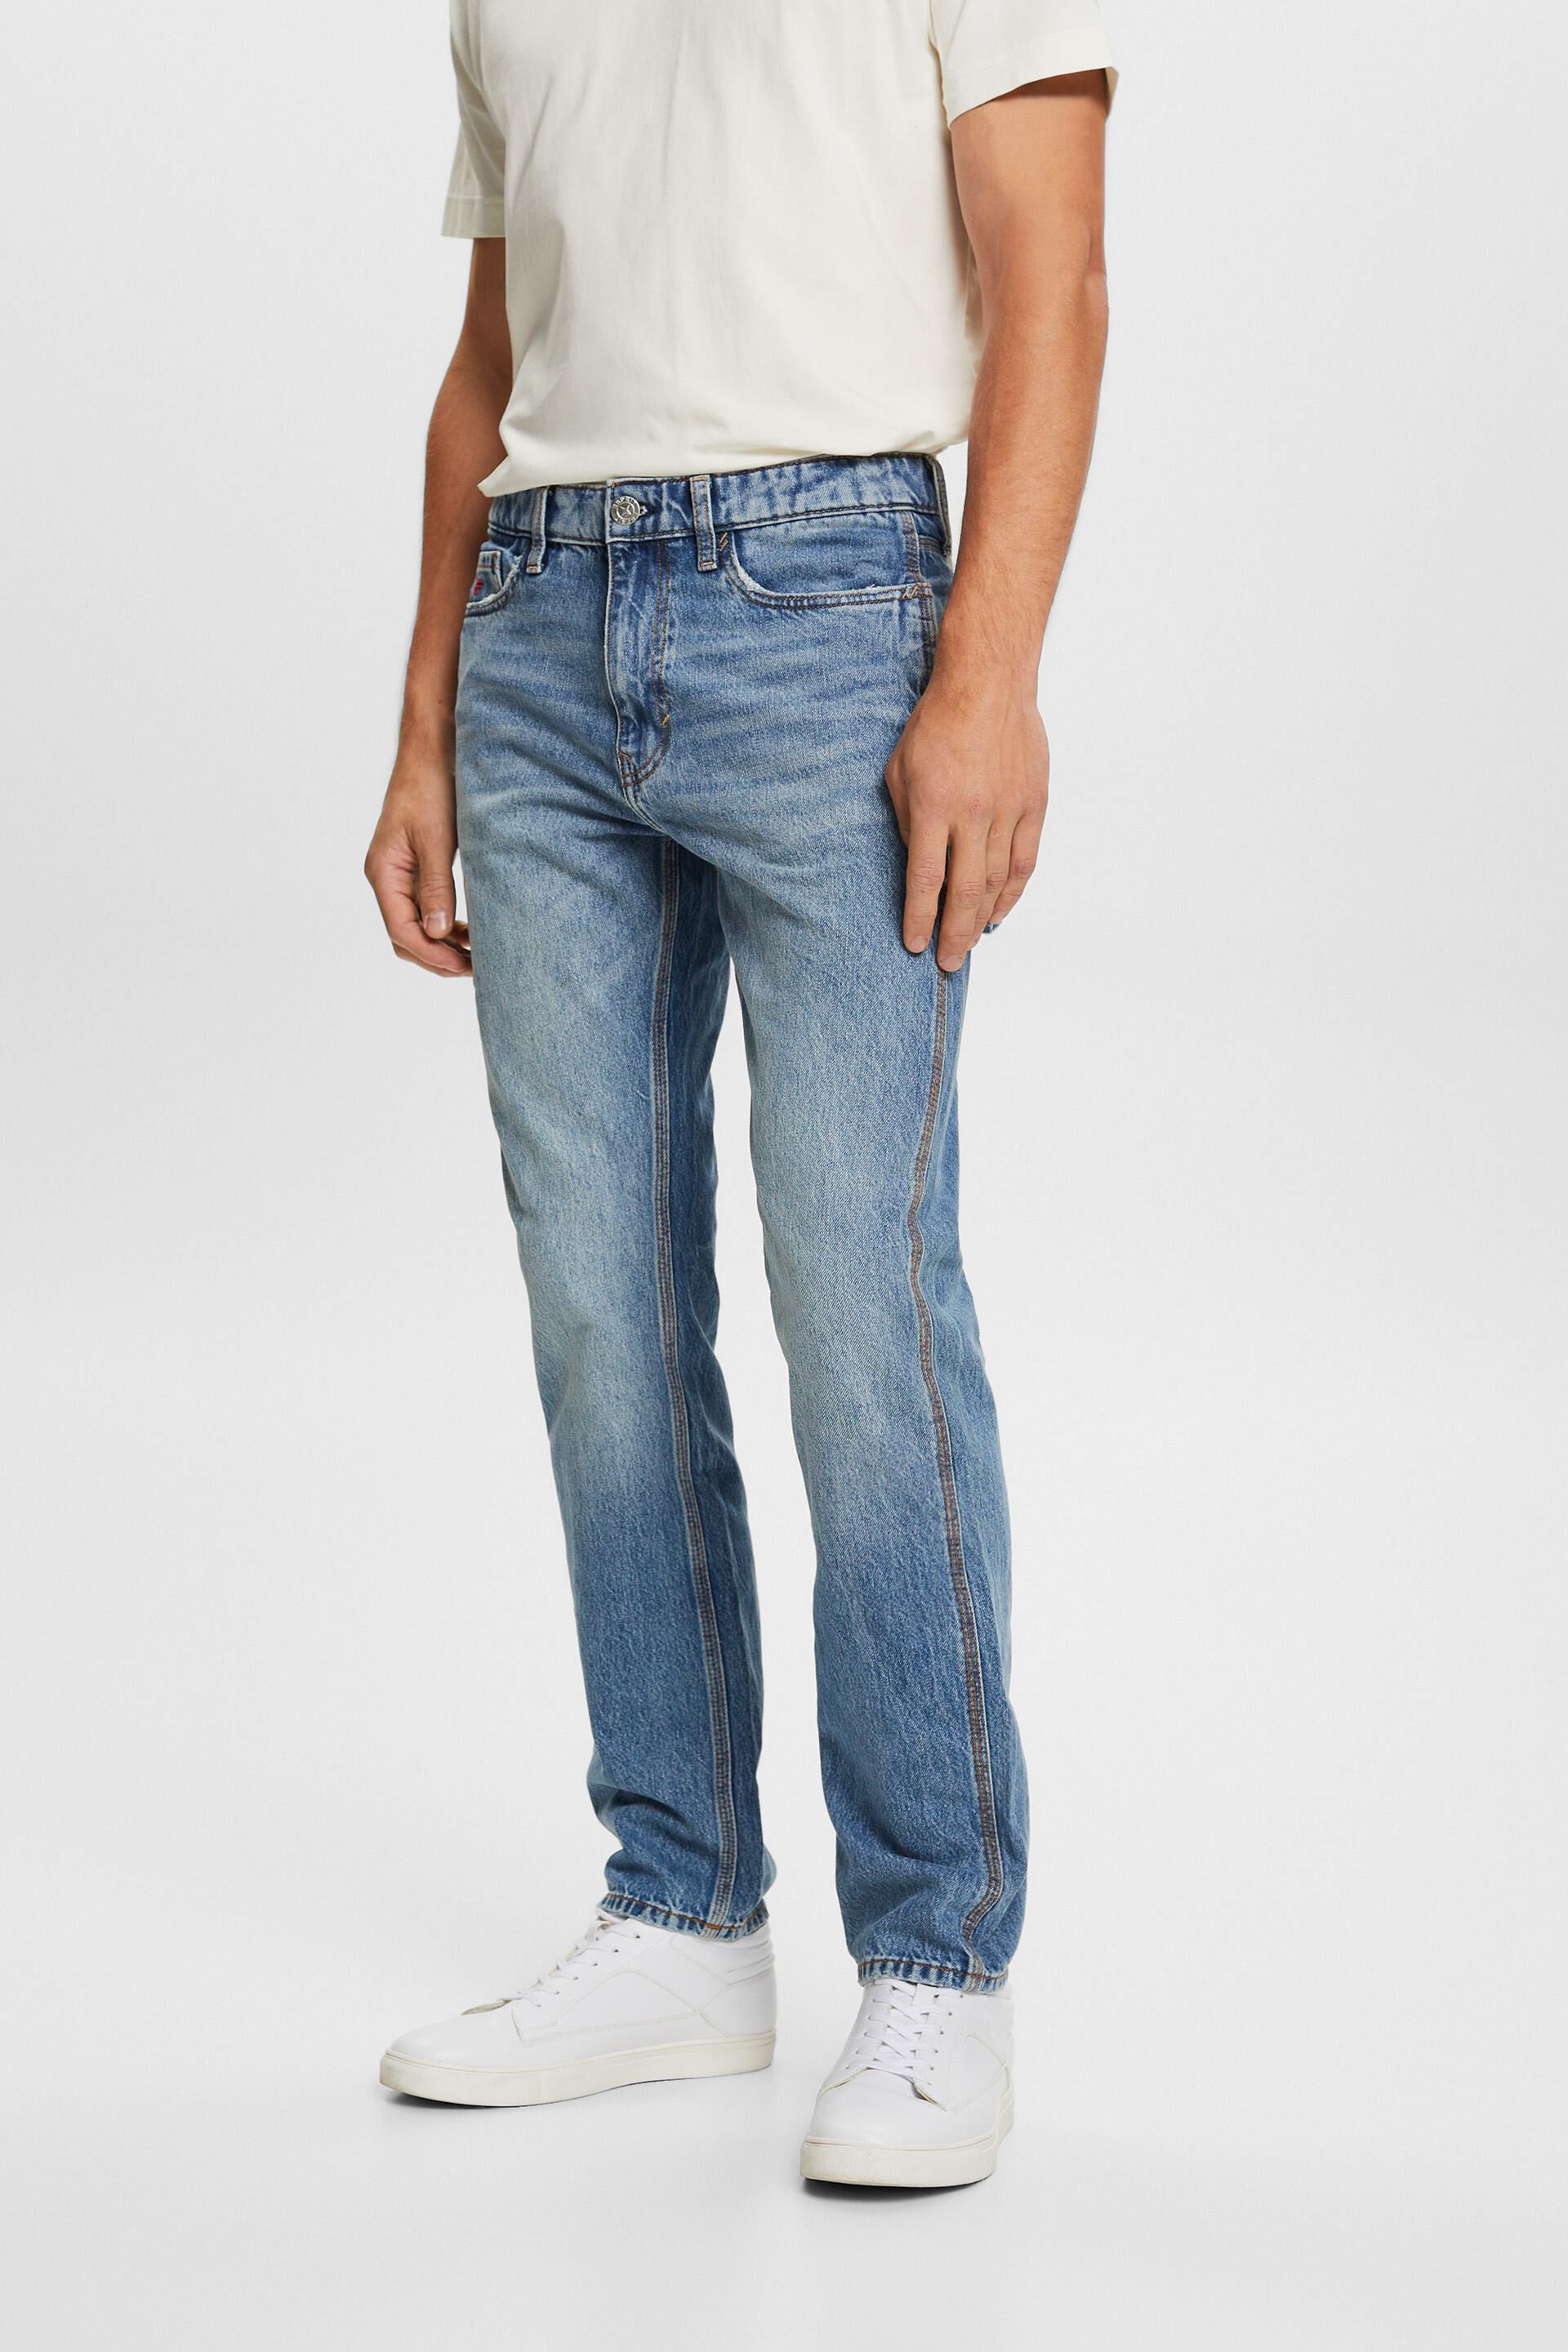 Esprit jeans, Carpenter straight 100% fit cotton